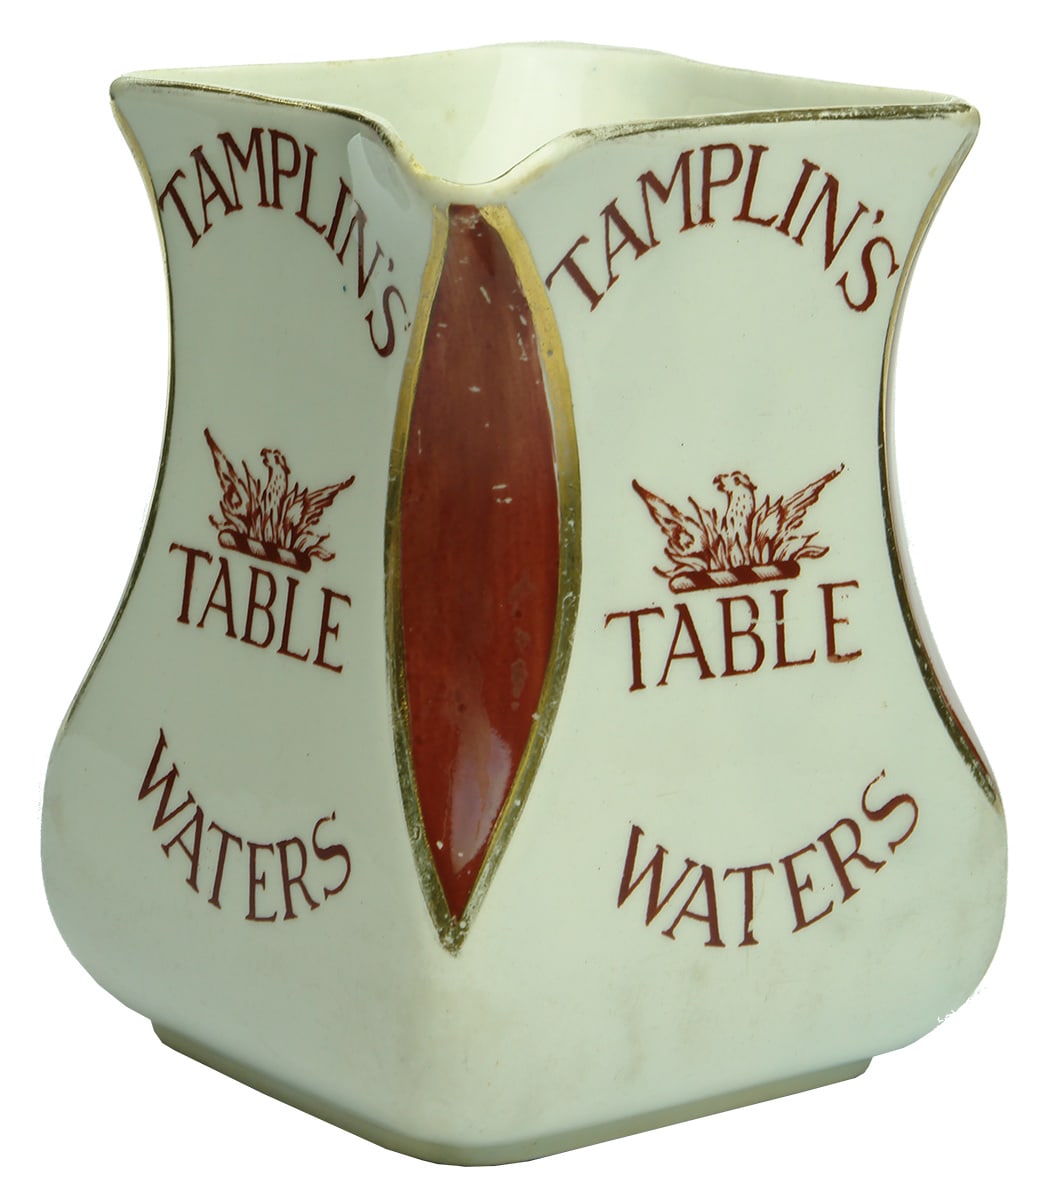 Tamplin's Table Waters Advertising Jug